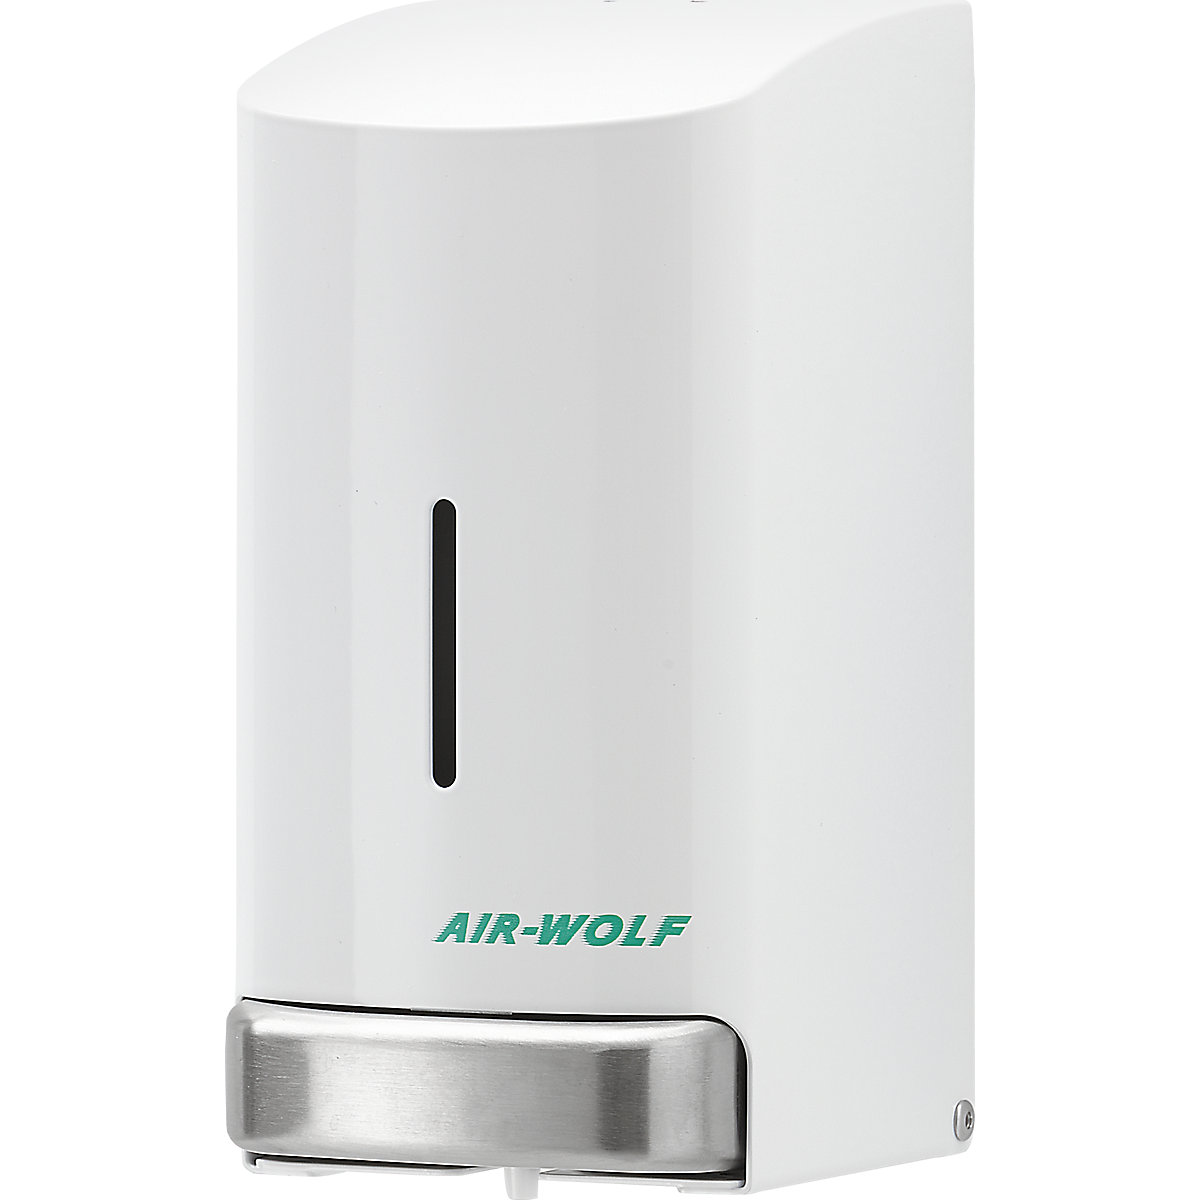 Edelstahl-Seifenspender AIR-WOLF, Inhalt 0,8 l, weiß beschichtet